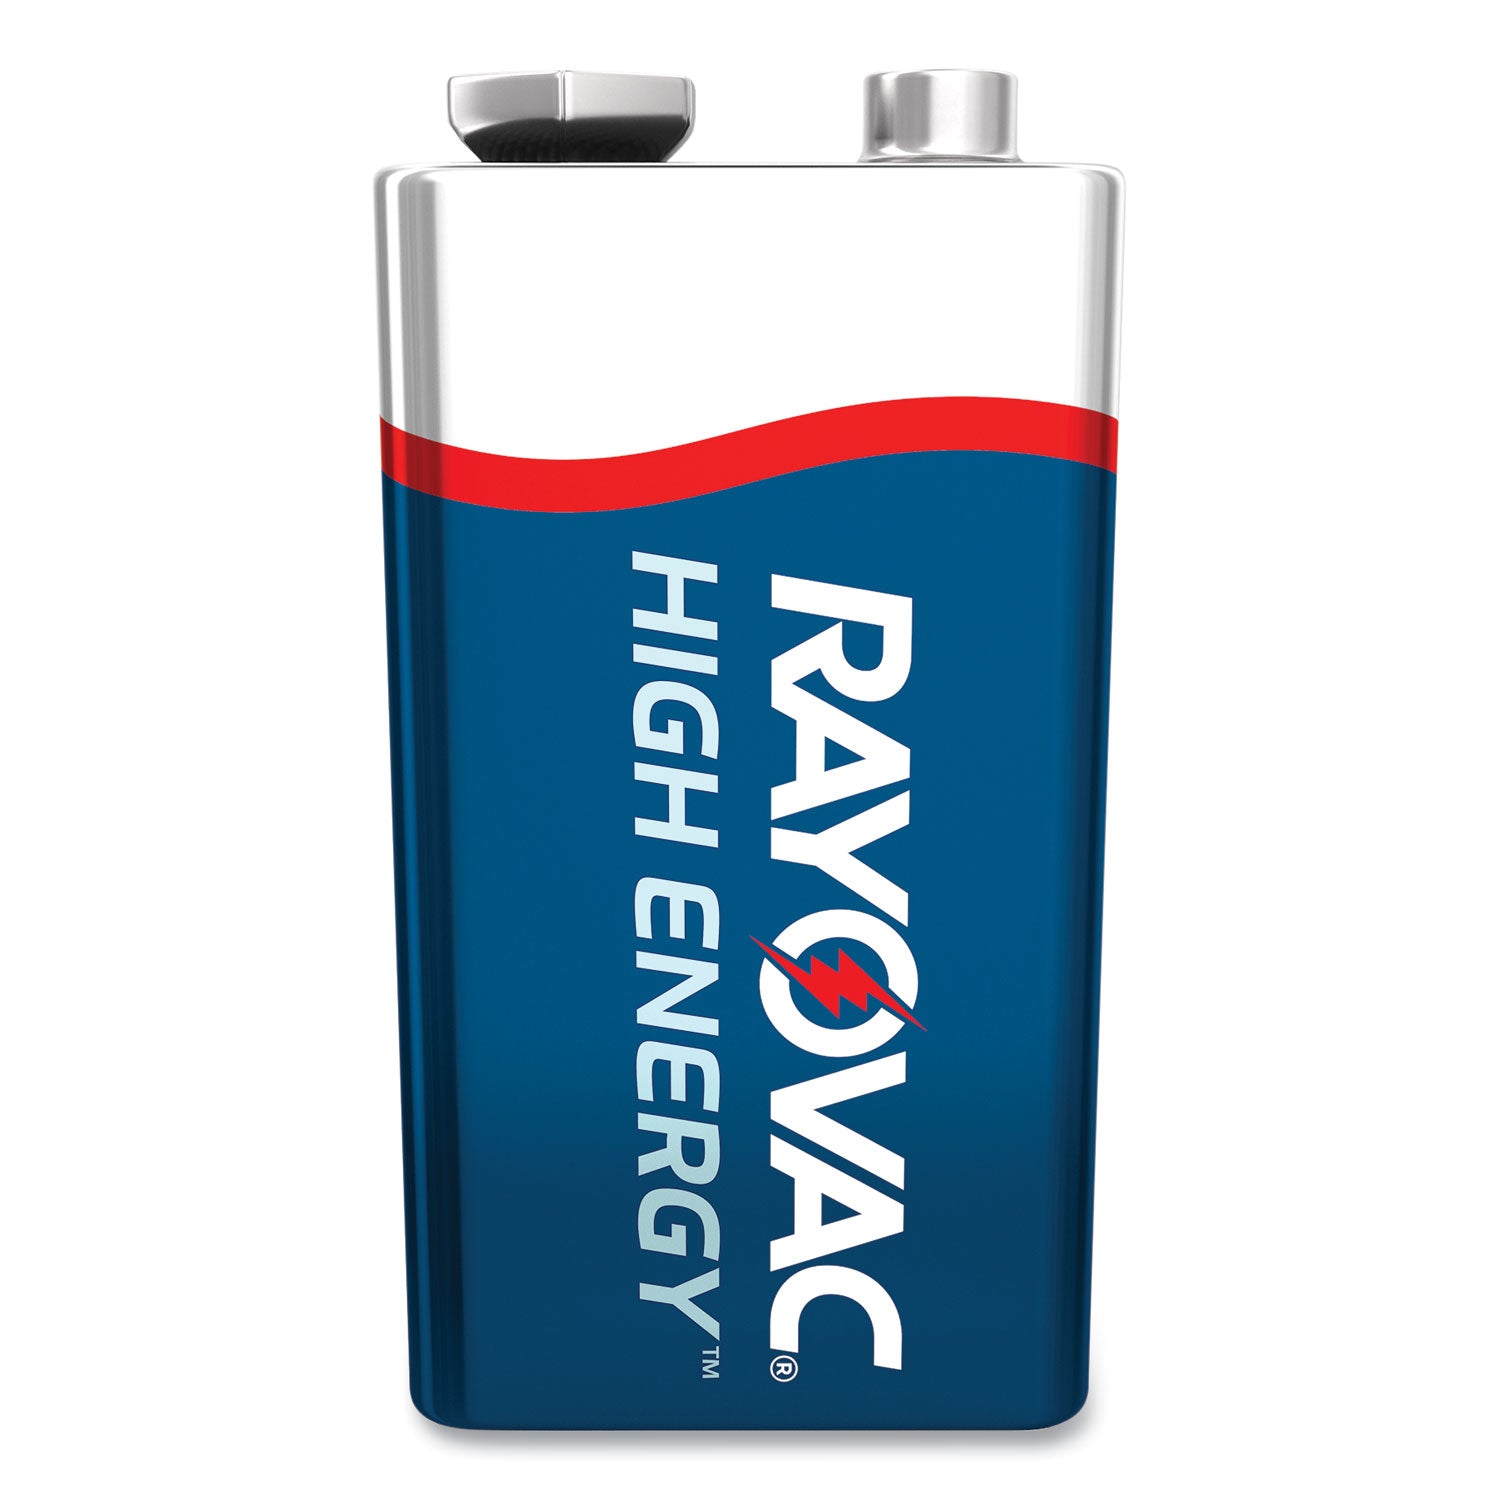 high-energy-premium-alkaline-9v-batteries-8-pack_raya16048ppk - 2